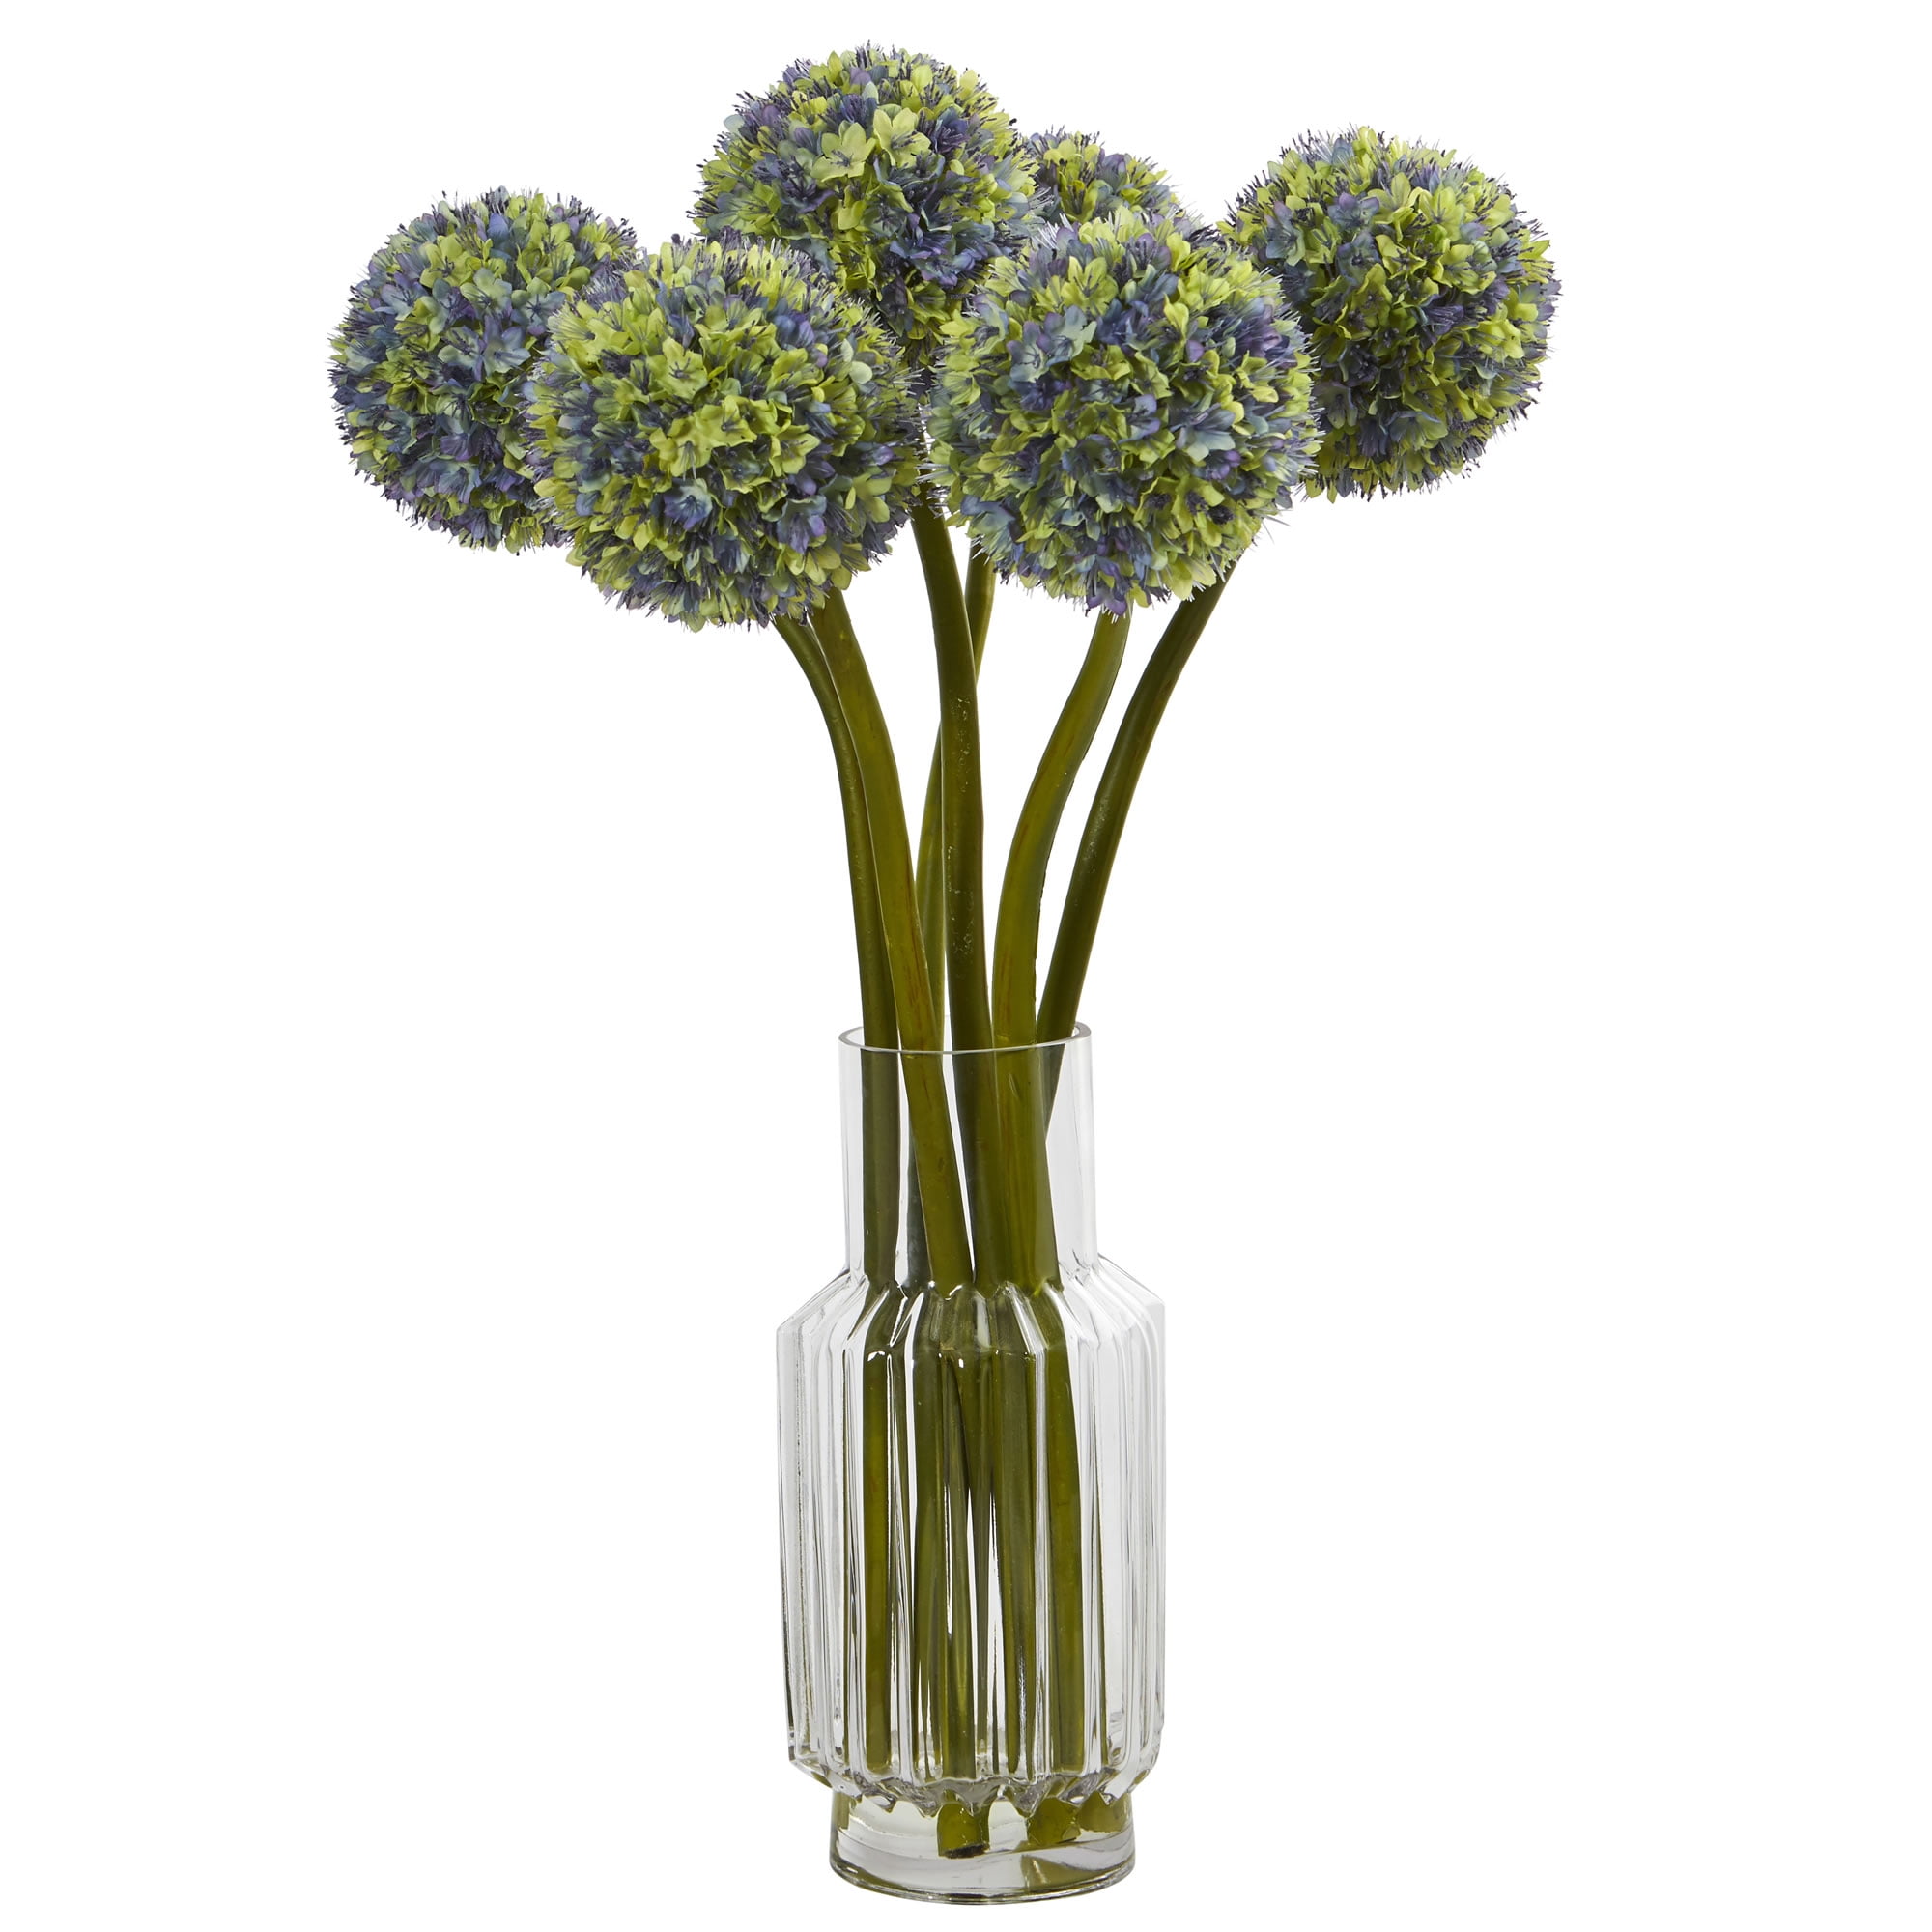 Details about   Home Desktop Decorative Ball Shape Artificial Flower Simulation Plastic Vase New 